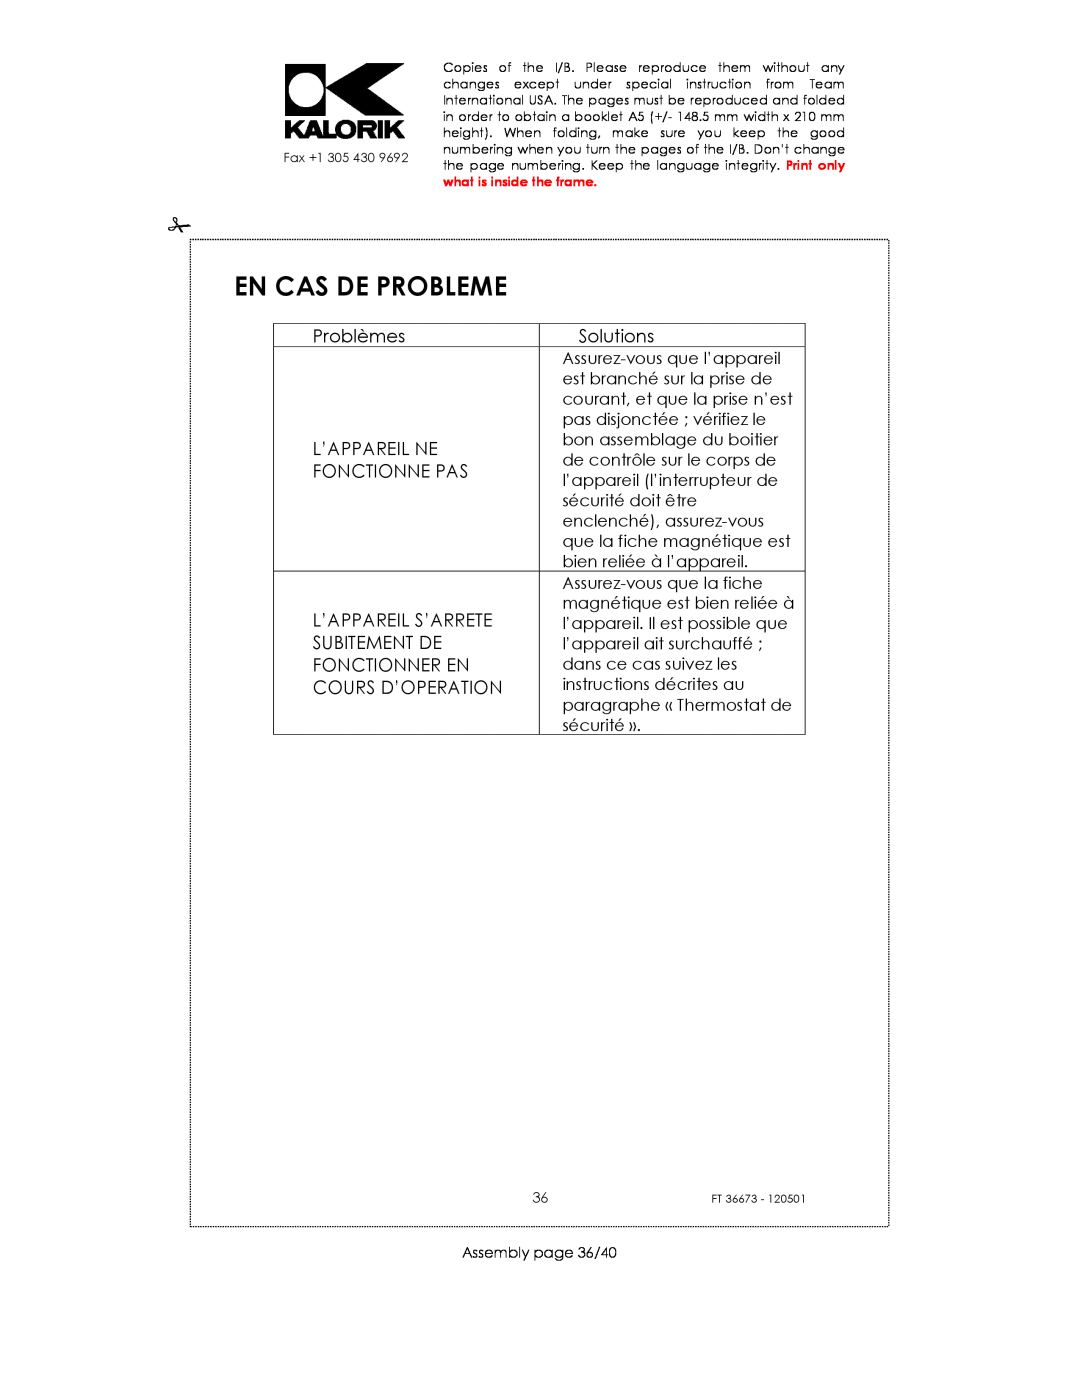 Kalorik USK FT 36673 manual En Cas De Probleme, Problèmes, Solutions, L’Appareil Ne, Fonctionne Pas, L’Appareil S’Arrete 